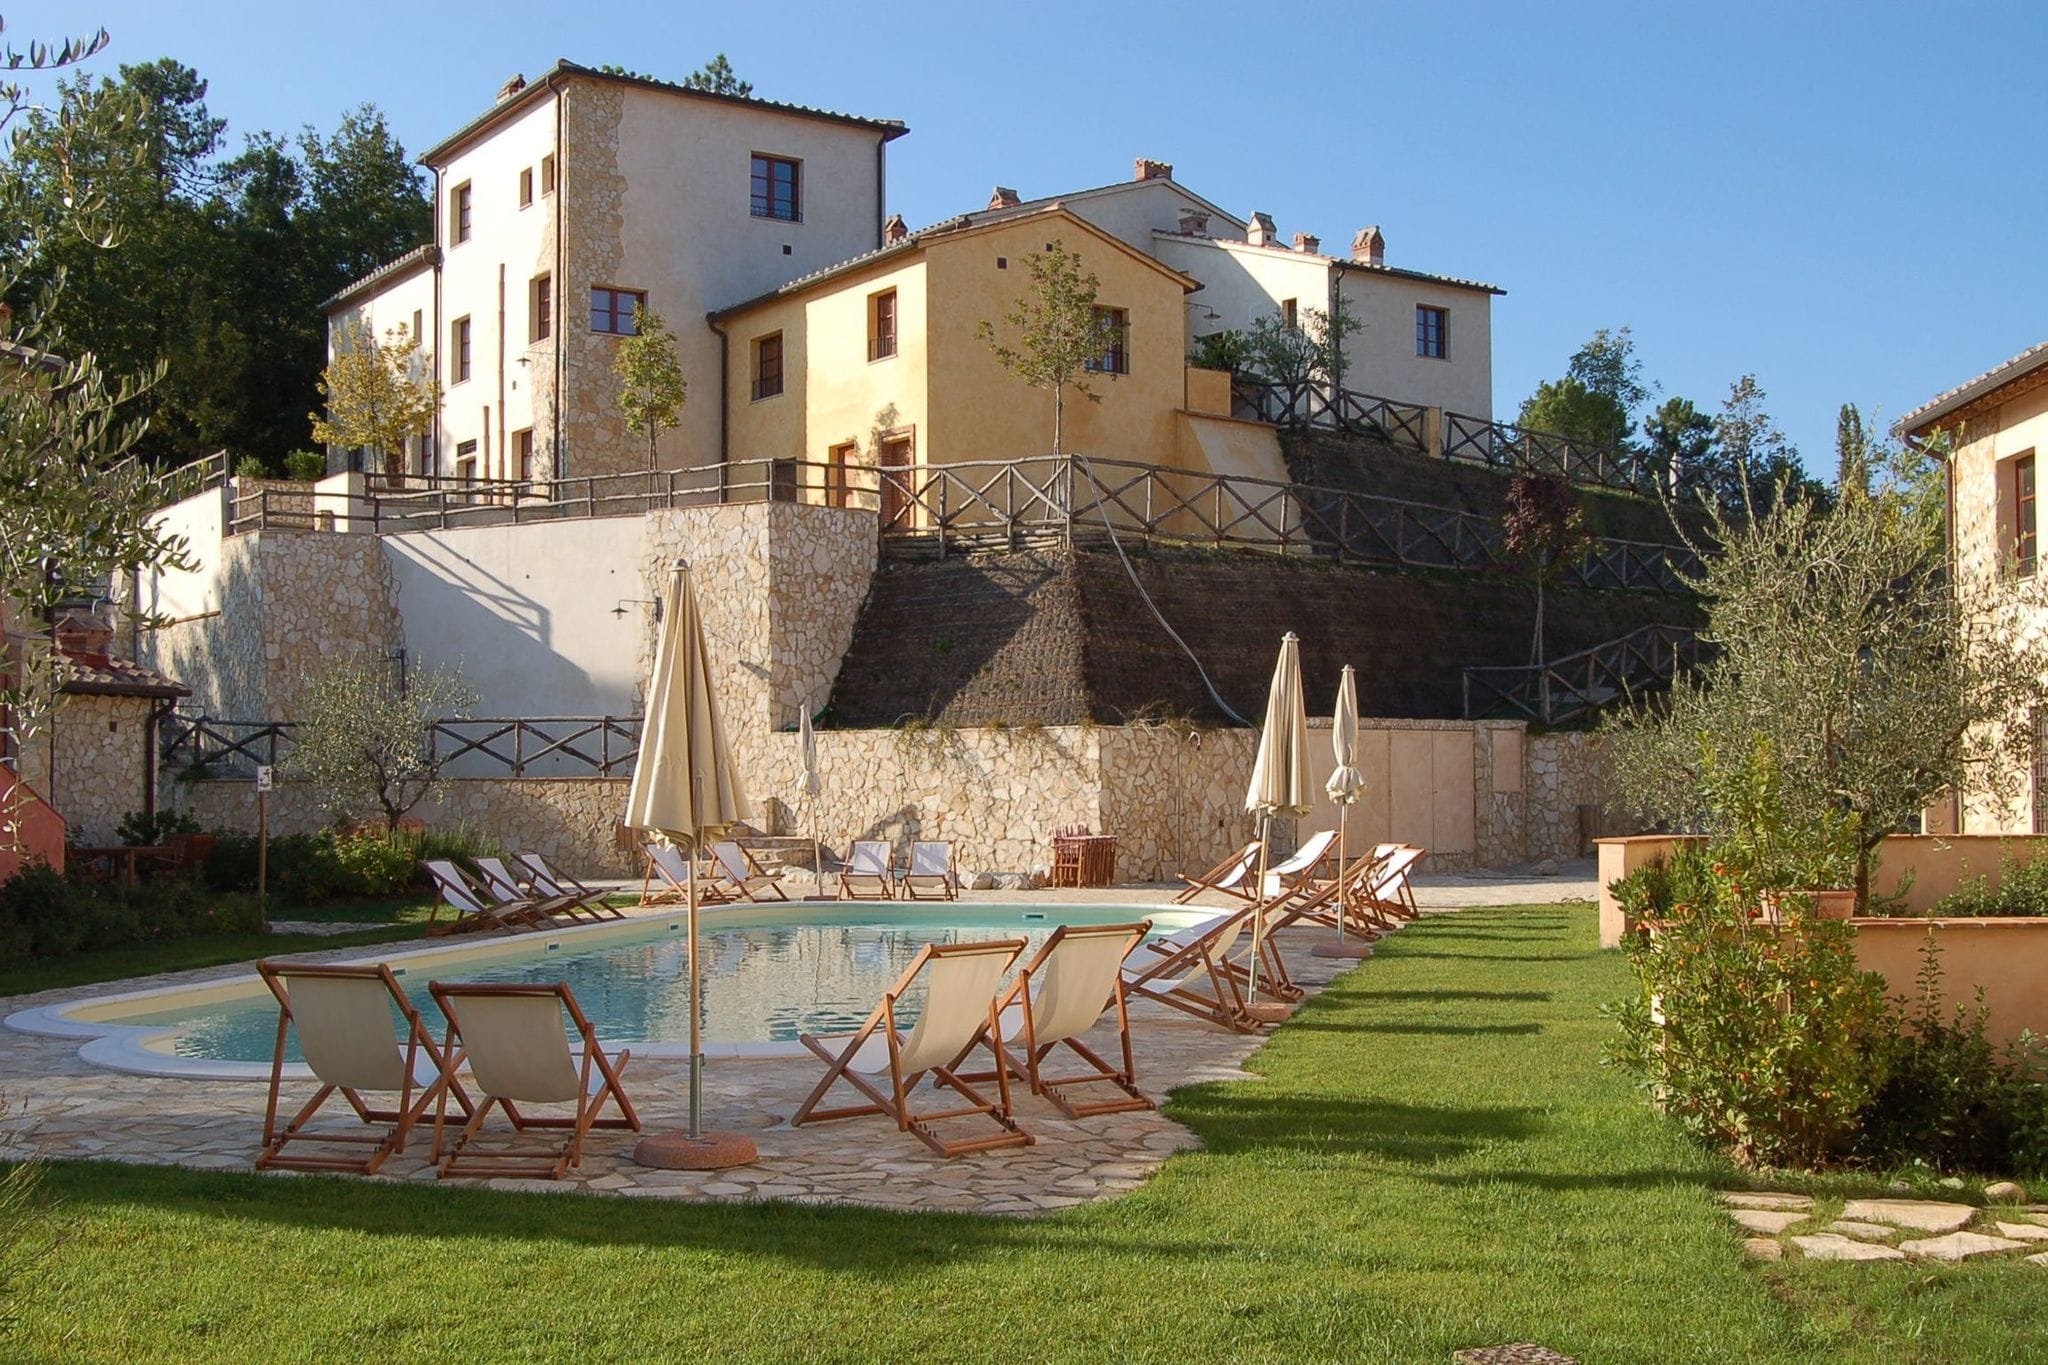 Vintage-Ferienhaus mit Swimmingpool in der Toskana